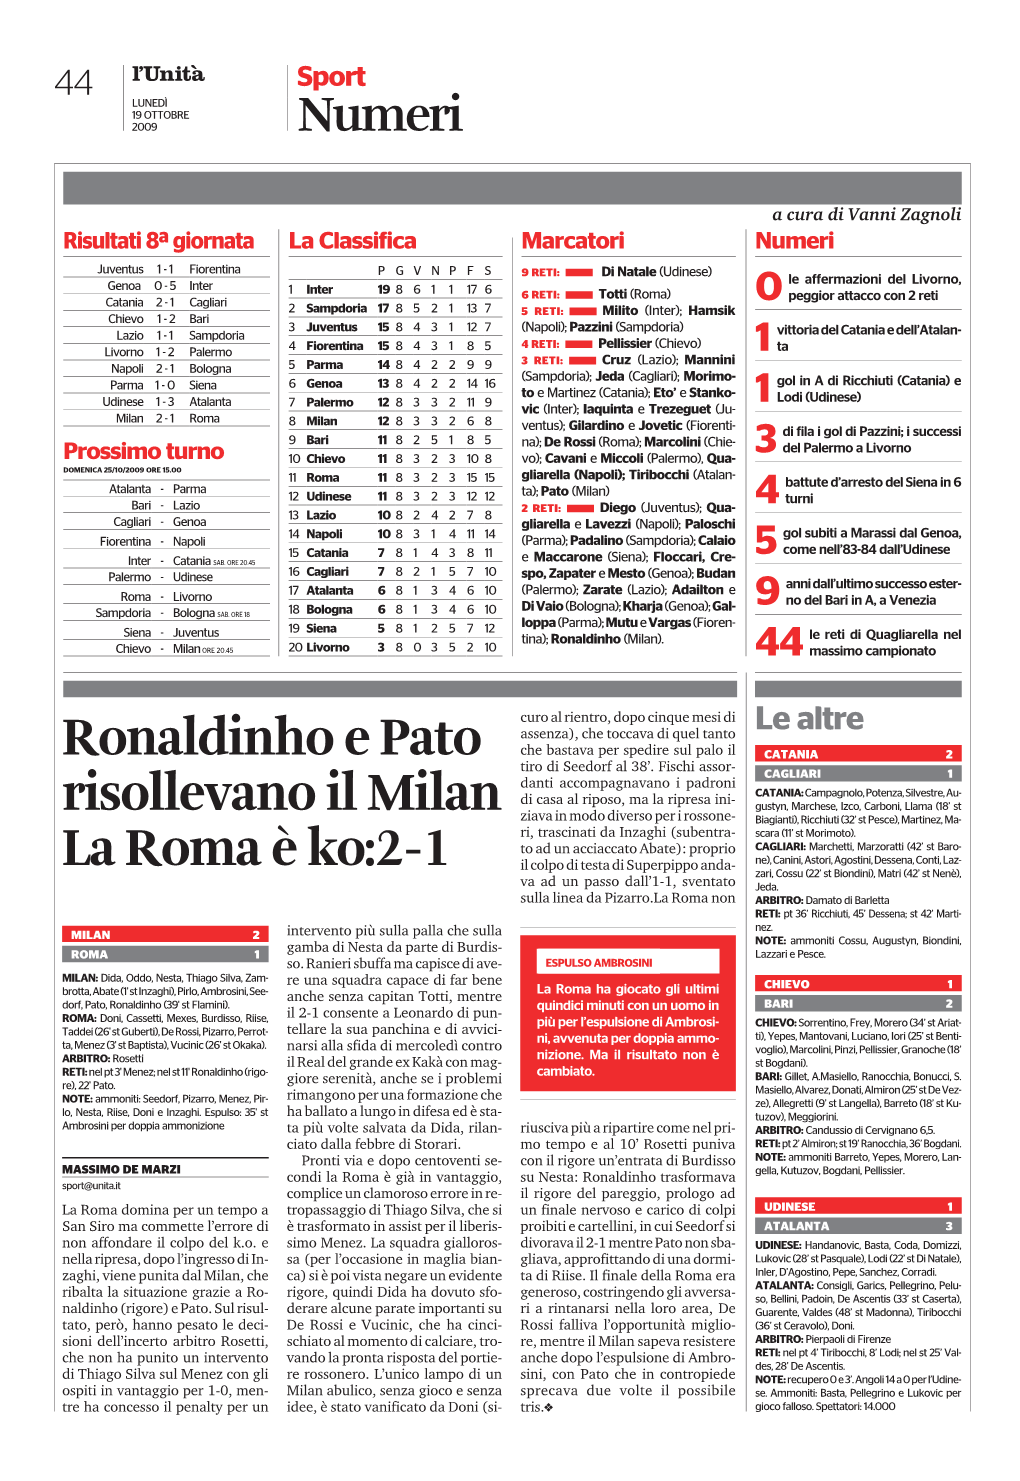 Ronaldinho E Pato Risollevano Il Milan La Roma È Ko:2-1